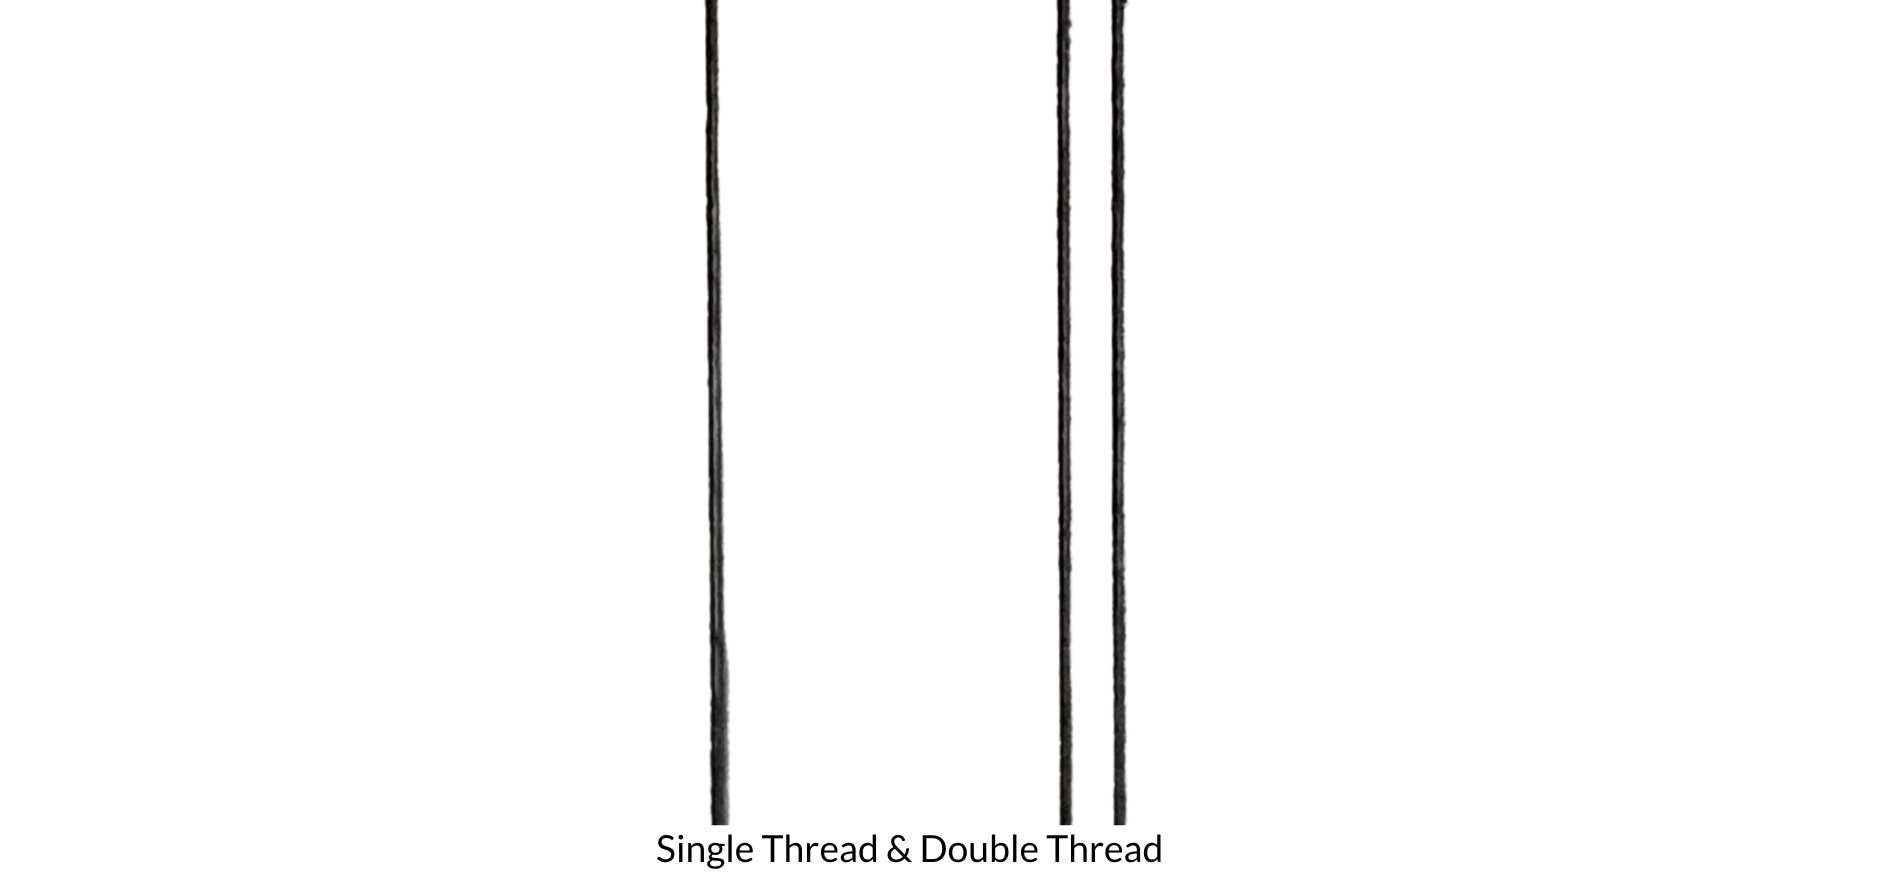 Single thread & Double Thread